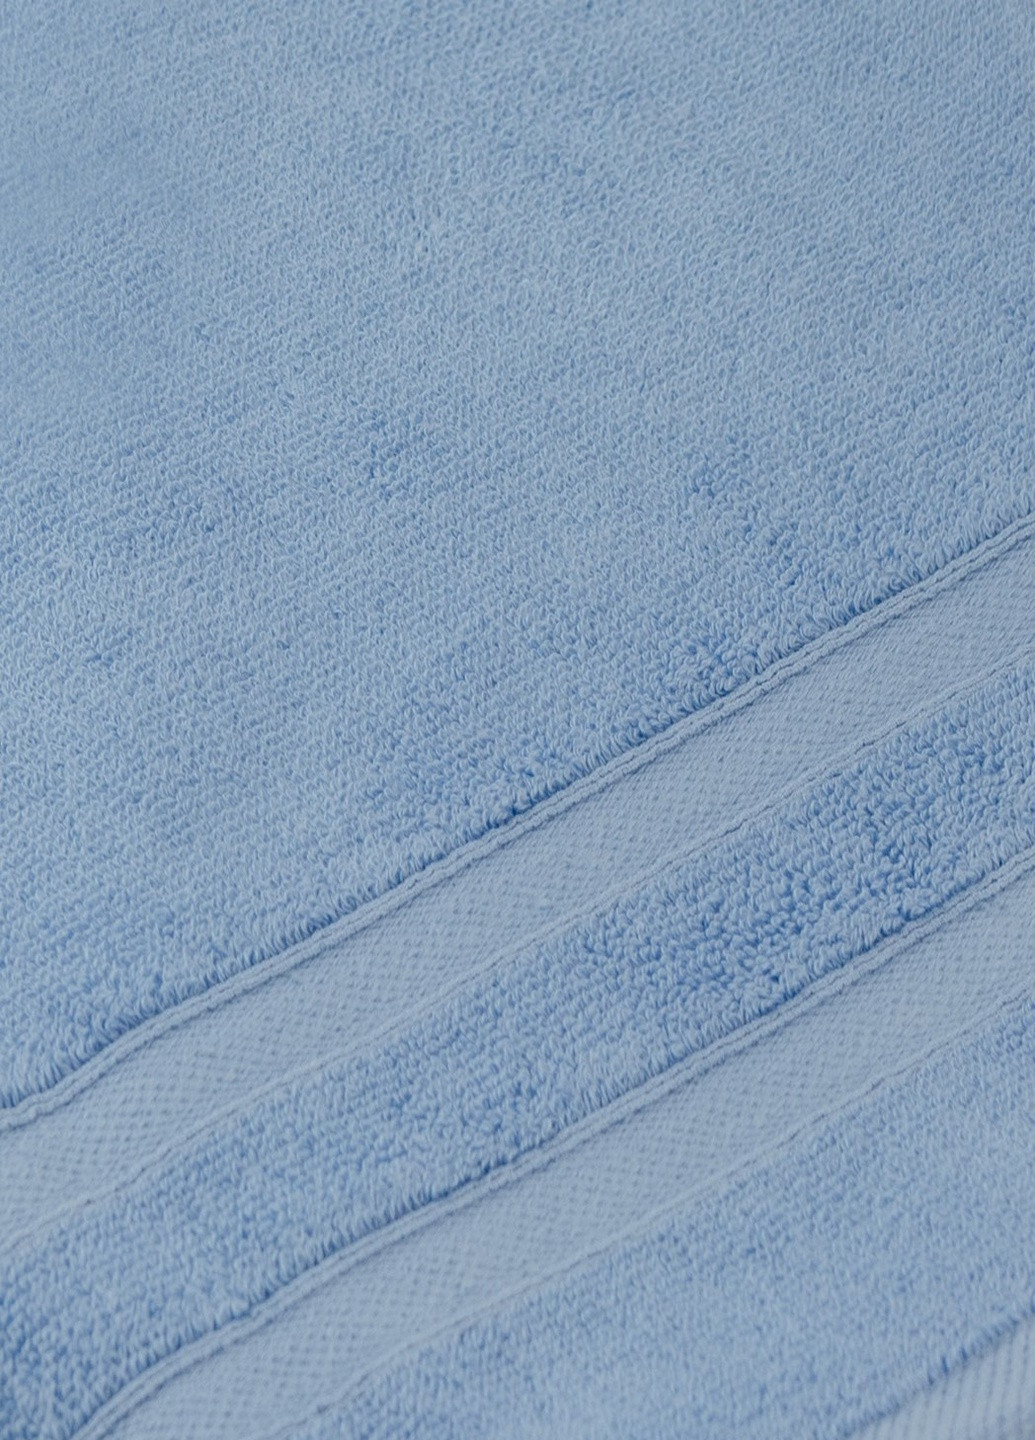 TURComFor турецкое полотенце tc303374686 однотонный голубой производство - Турция